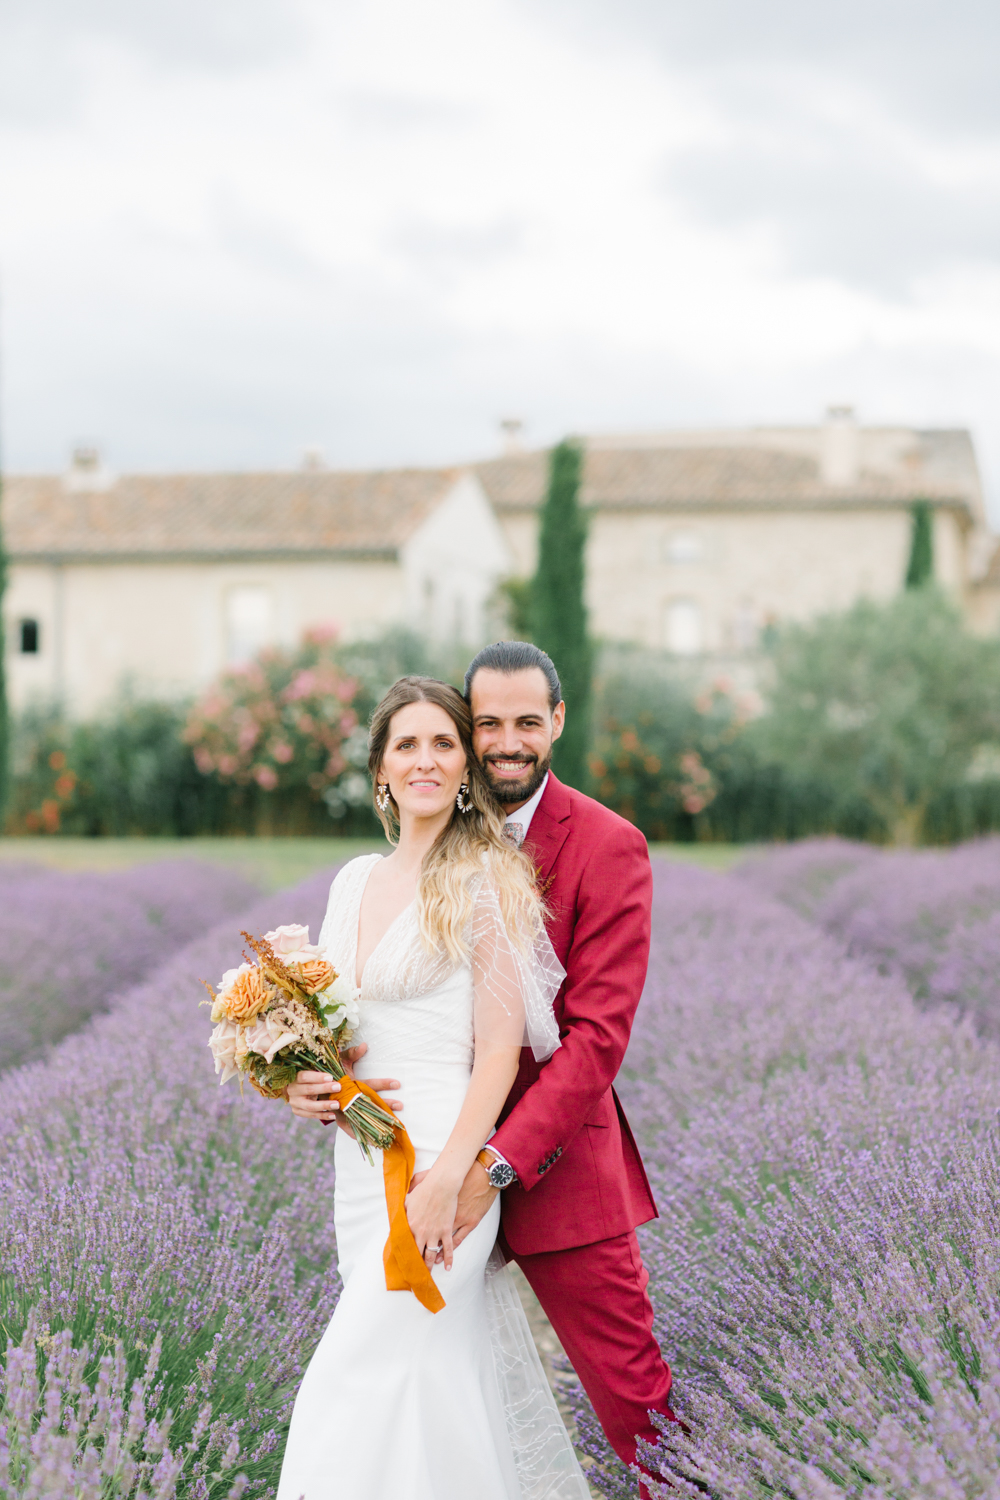 Mariage de Provence aux Domaines de Patras - Jessica + Mickaël - Blog Mariage Madame C